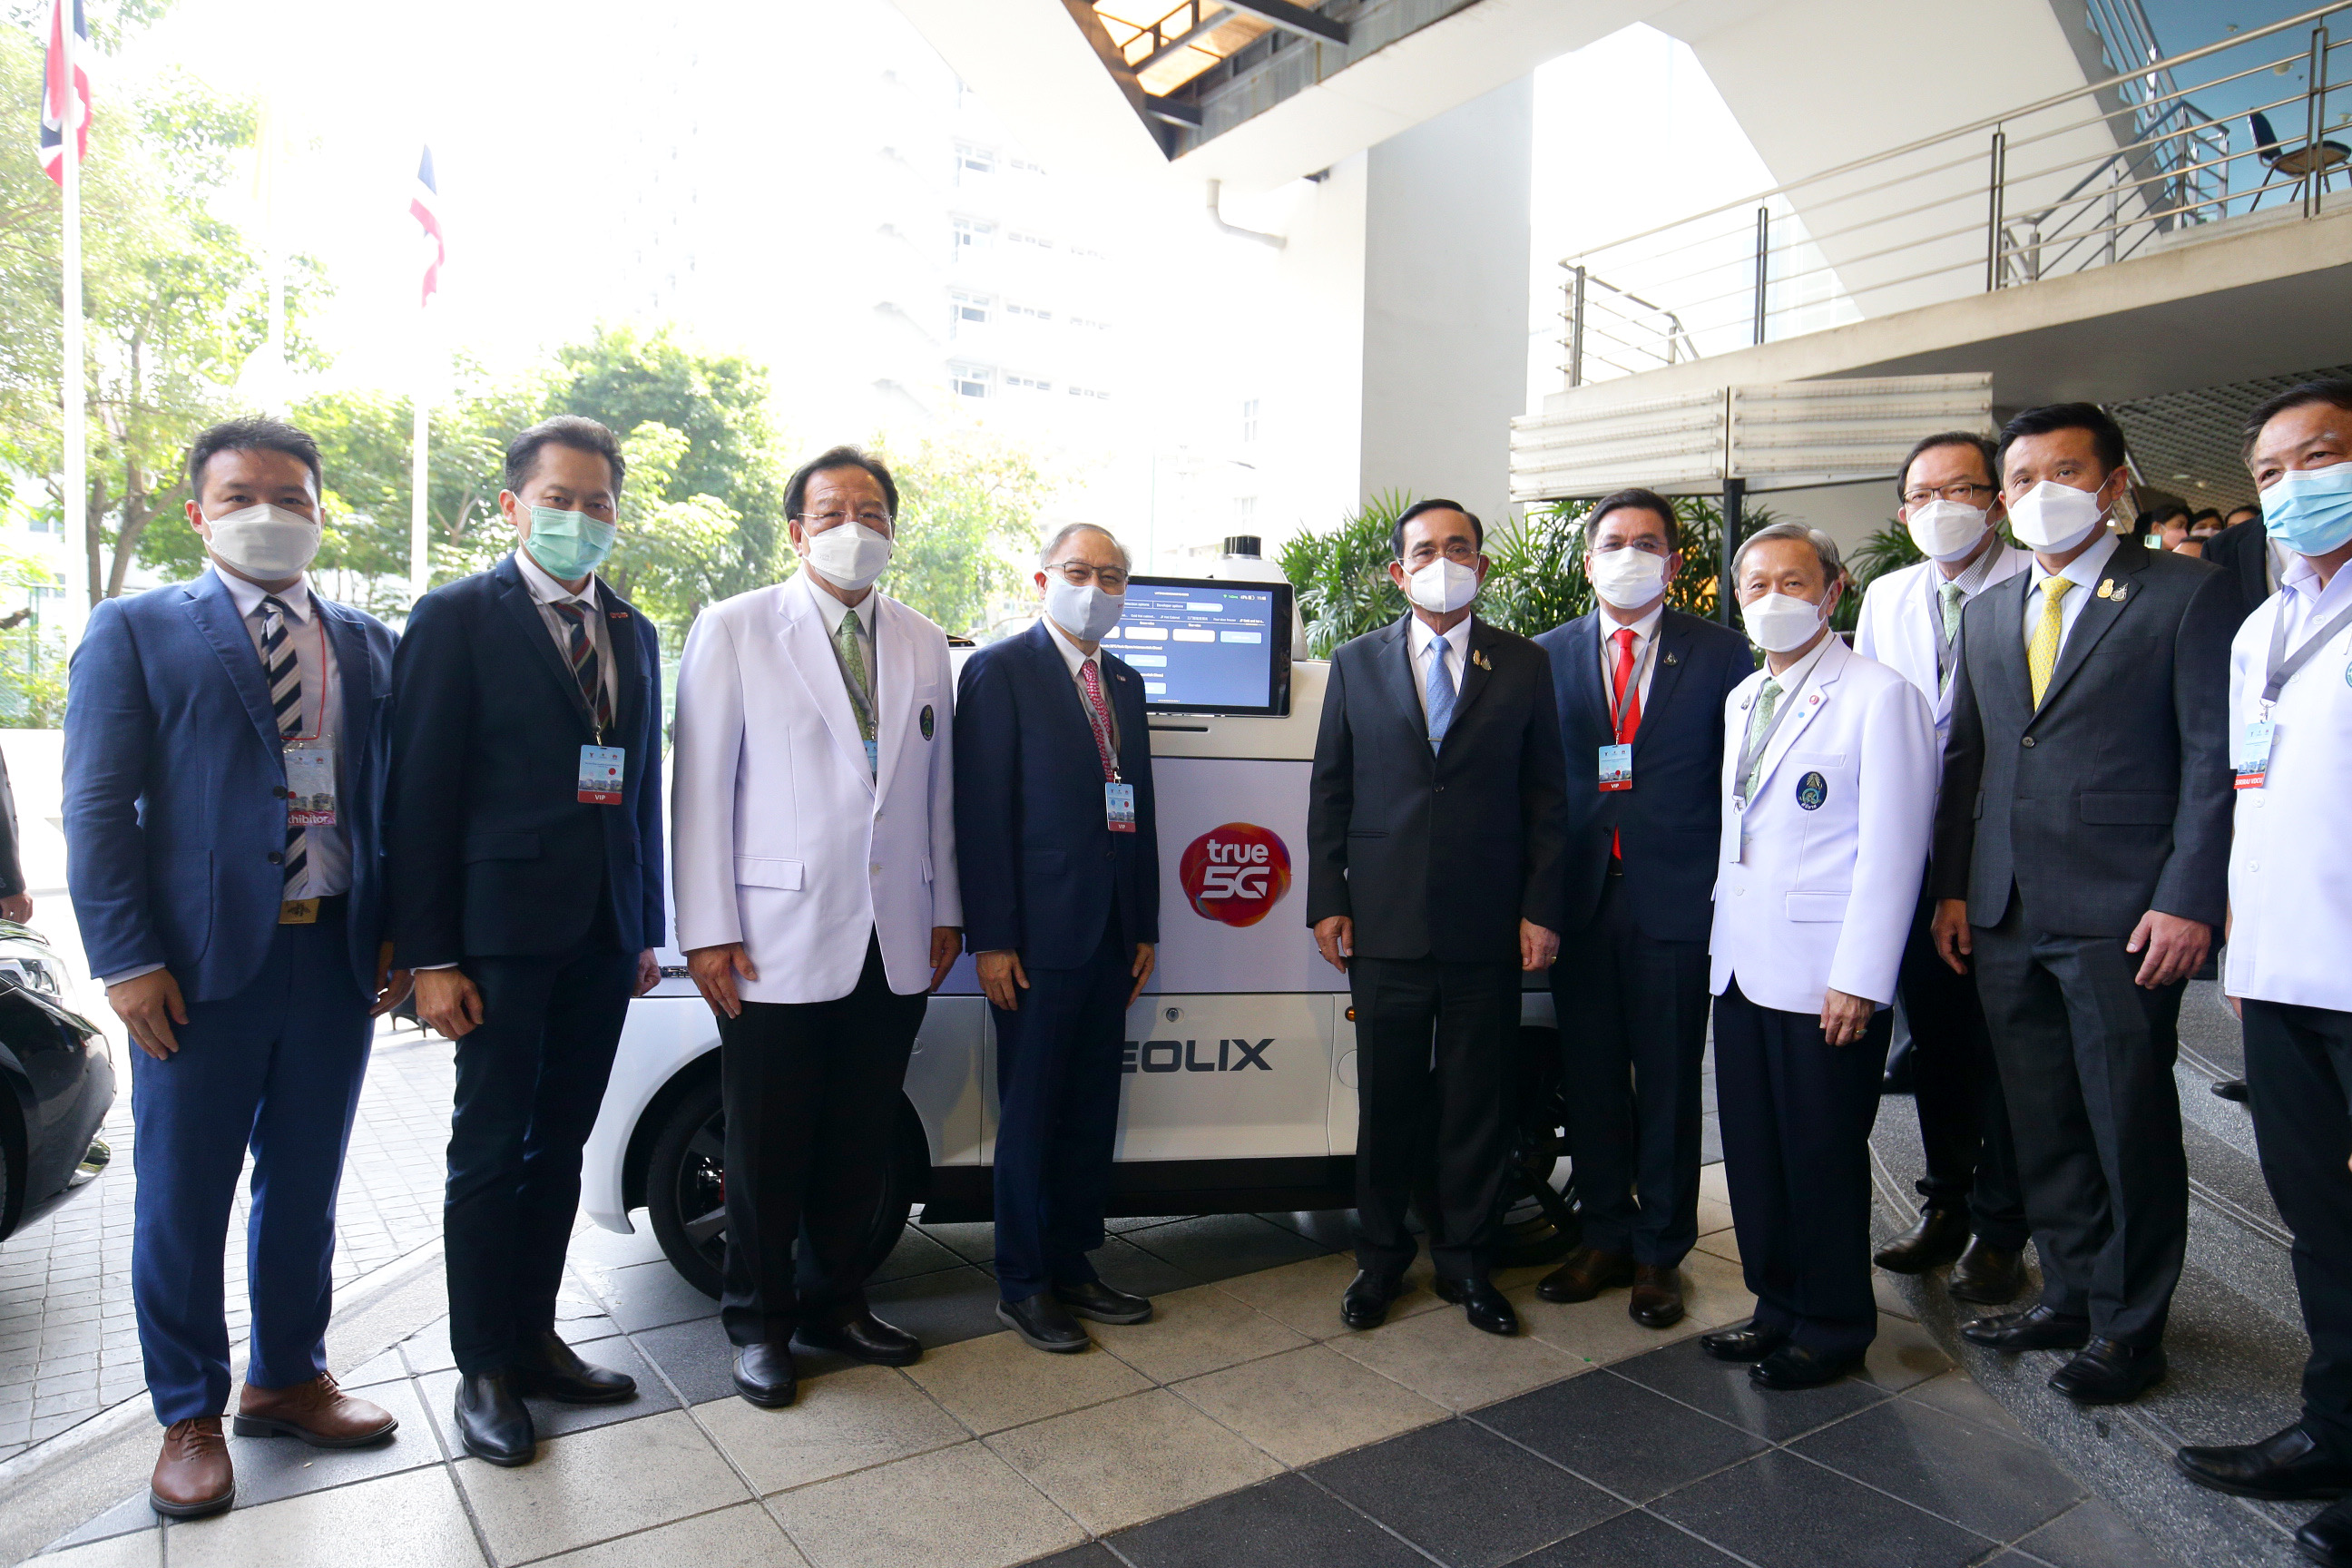 ทรู 5G ร่วมกับ รพ. ศิริราช ร่วมพัฒนาต้นแบบโรงพยาบาลอัจฉริยะระดับโลกด้วยเทคโนโลยีเครือข่าย 5G  “Siriraj World Class 5G Smart Hospital”